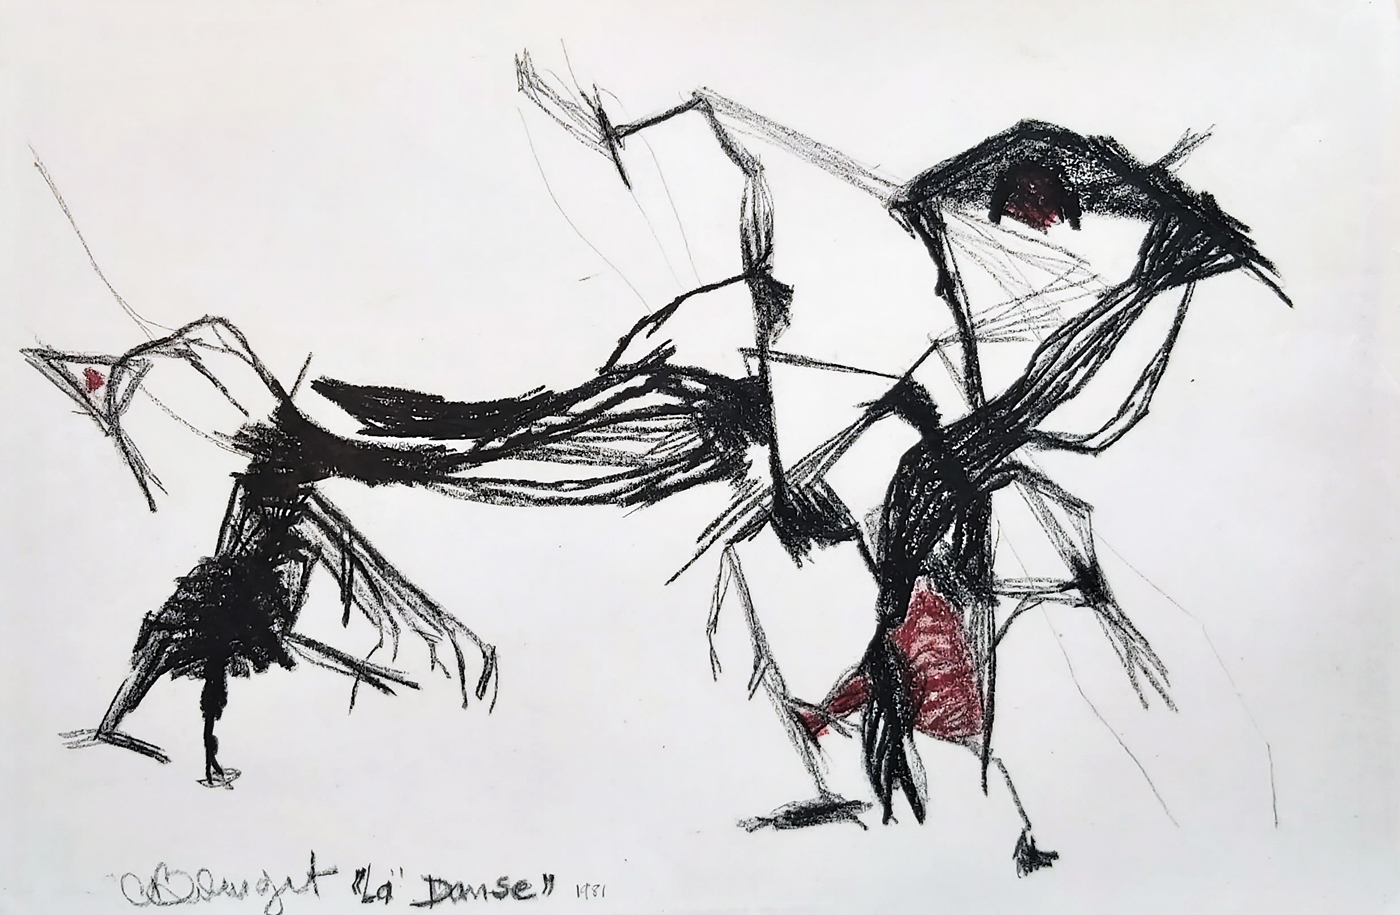 La danse. Claude Marc Bourget, 1980. Crayons gras sur papier vélin. (44 x 29 cm)